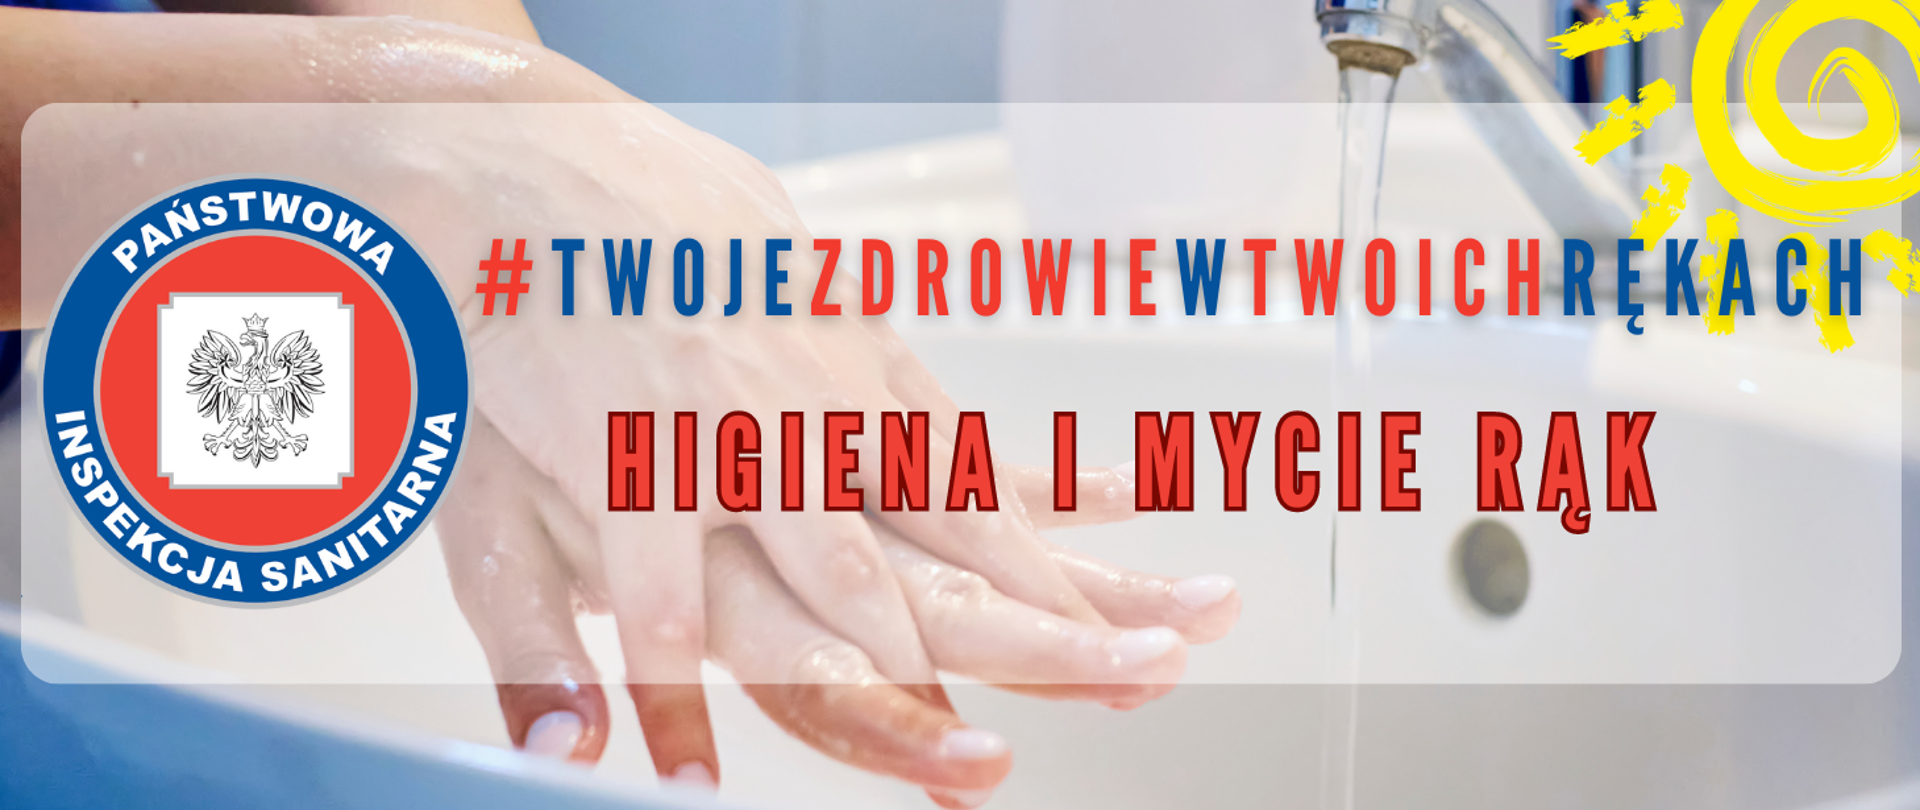 Grafika przedstawia kobiece ręce myte pod bieżącą wodą. Na obrazku napis: #Twojezdrowiewtwoichrękach Higiena i mycie rąk 